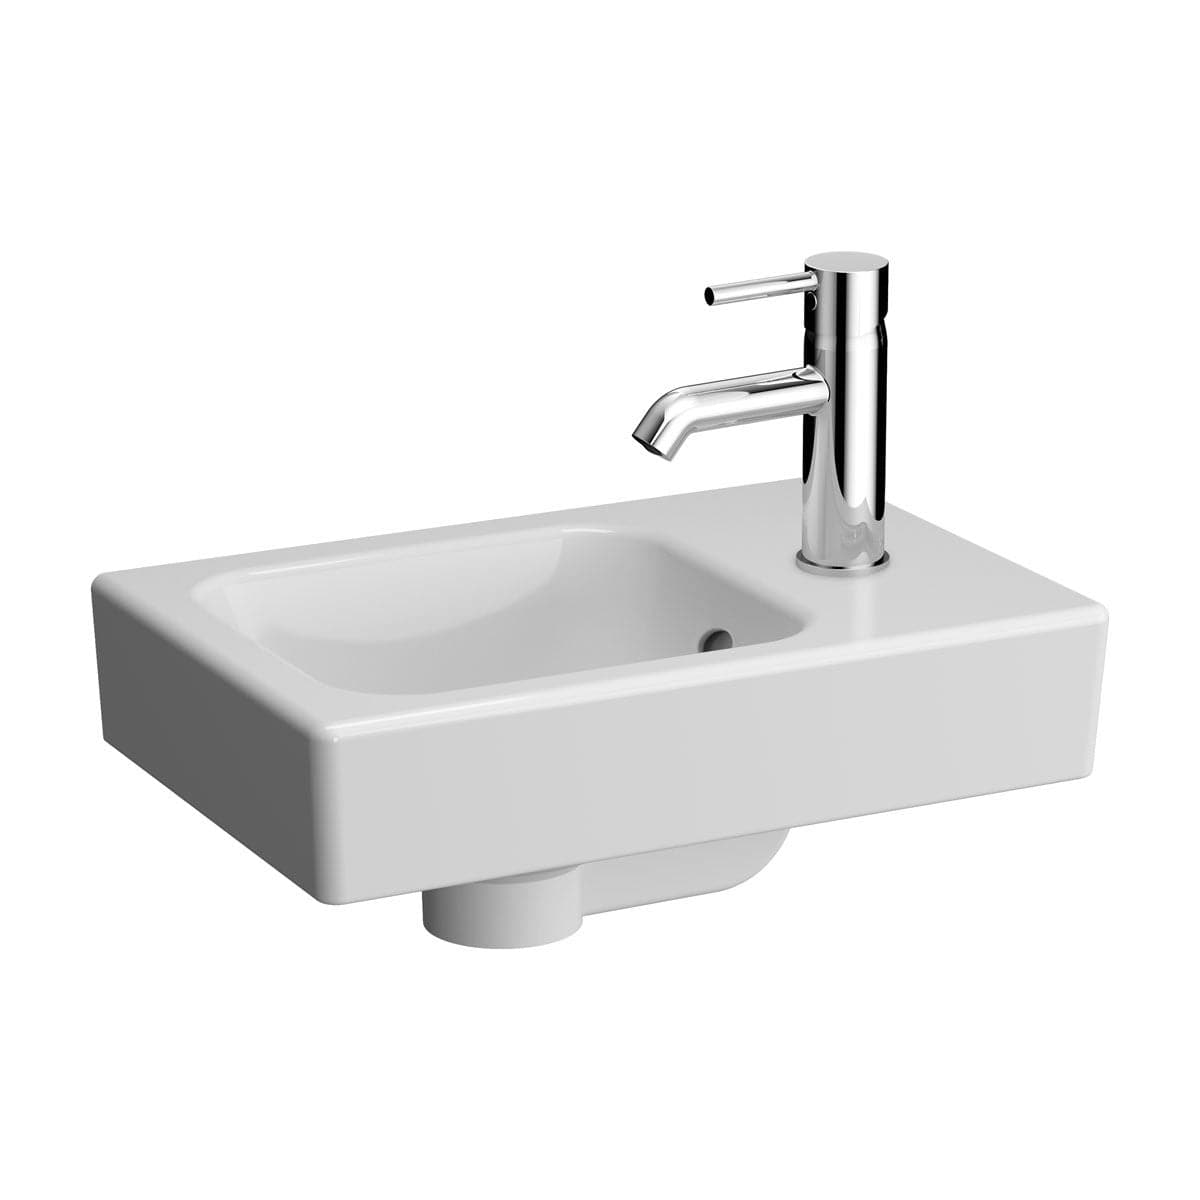 VitrA Options Handwaschbecken 38 cm Weiß Hochglanz mit VitrA Clean VitrA